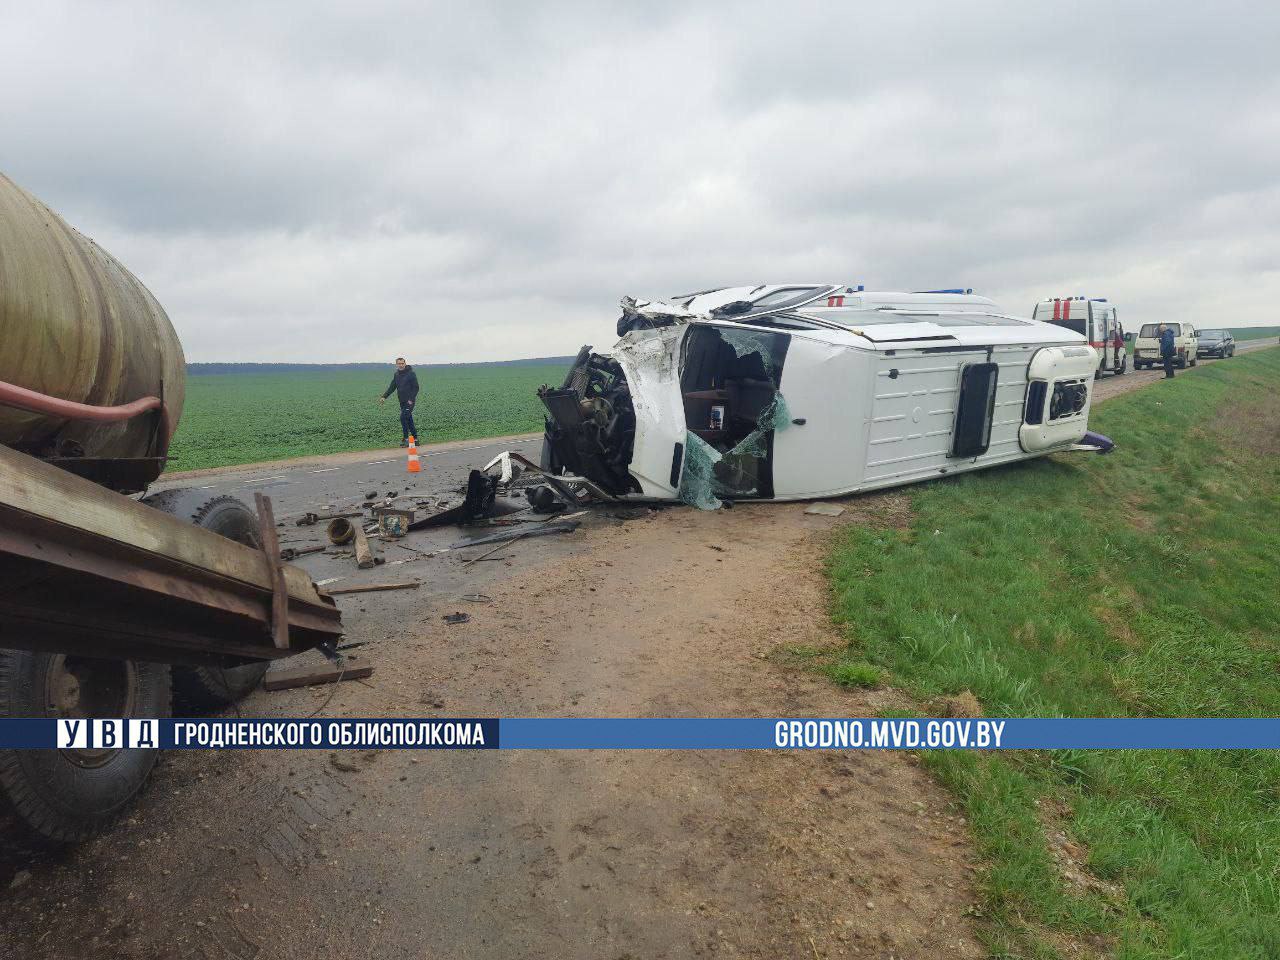 Полная маршрутка людей в Мостовском районе протаранила трактор и перевернулась: пострадали 10 человек, в том числе и дети